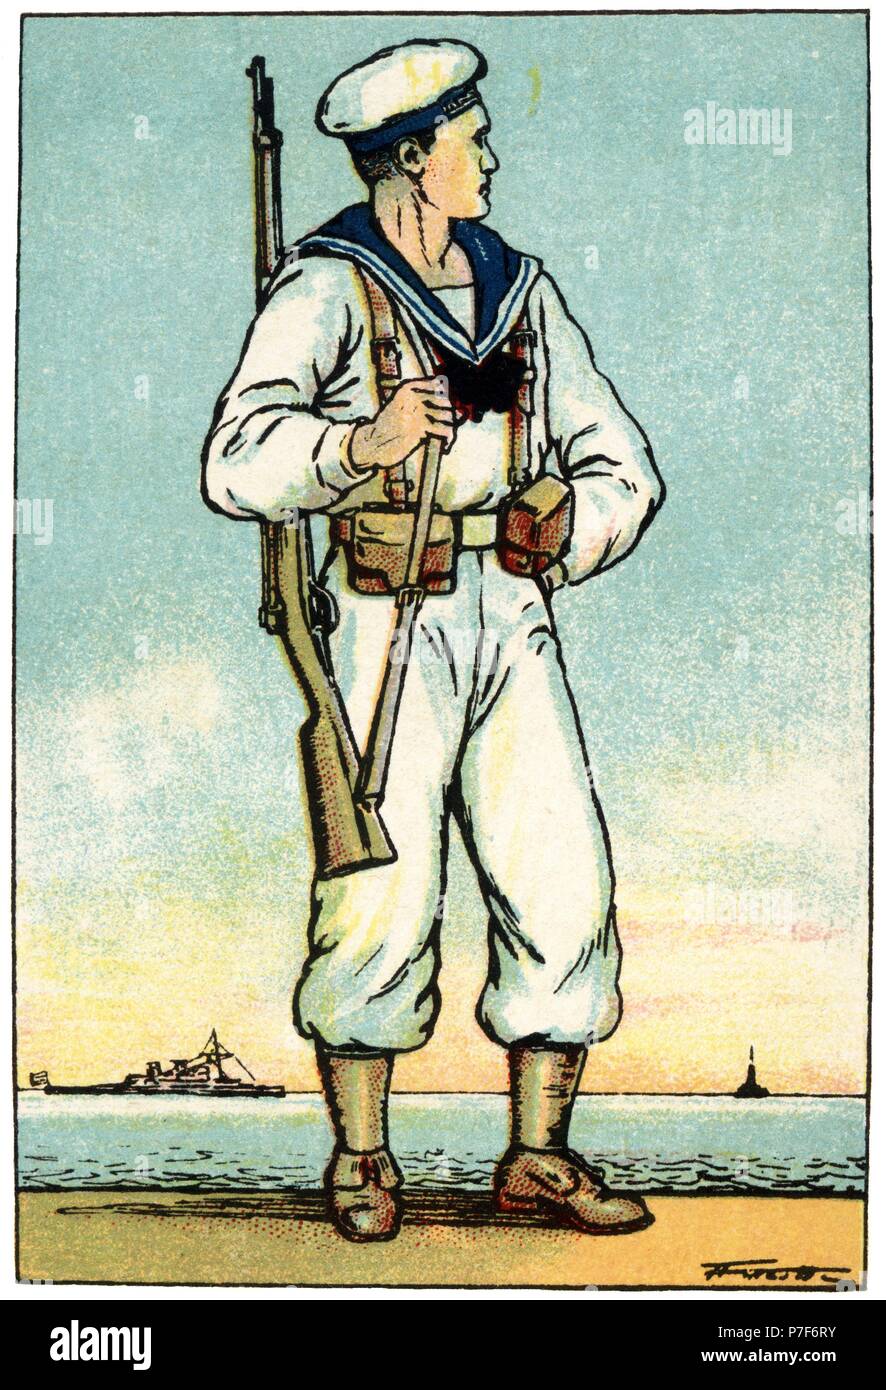 Traje de campaña de verano de marinero español de principios del siglo XX. Cromo de Chocolates Juncosa. Años 1920. Stock Photo